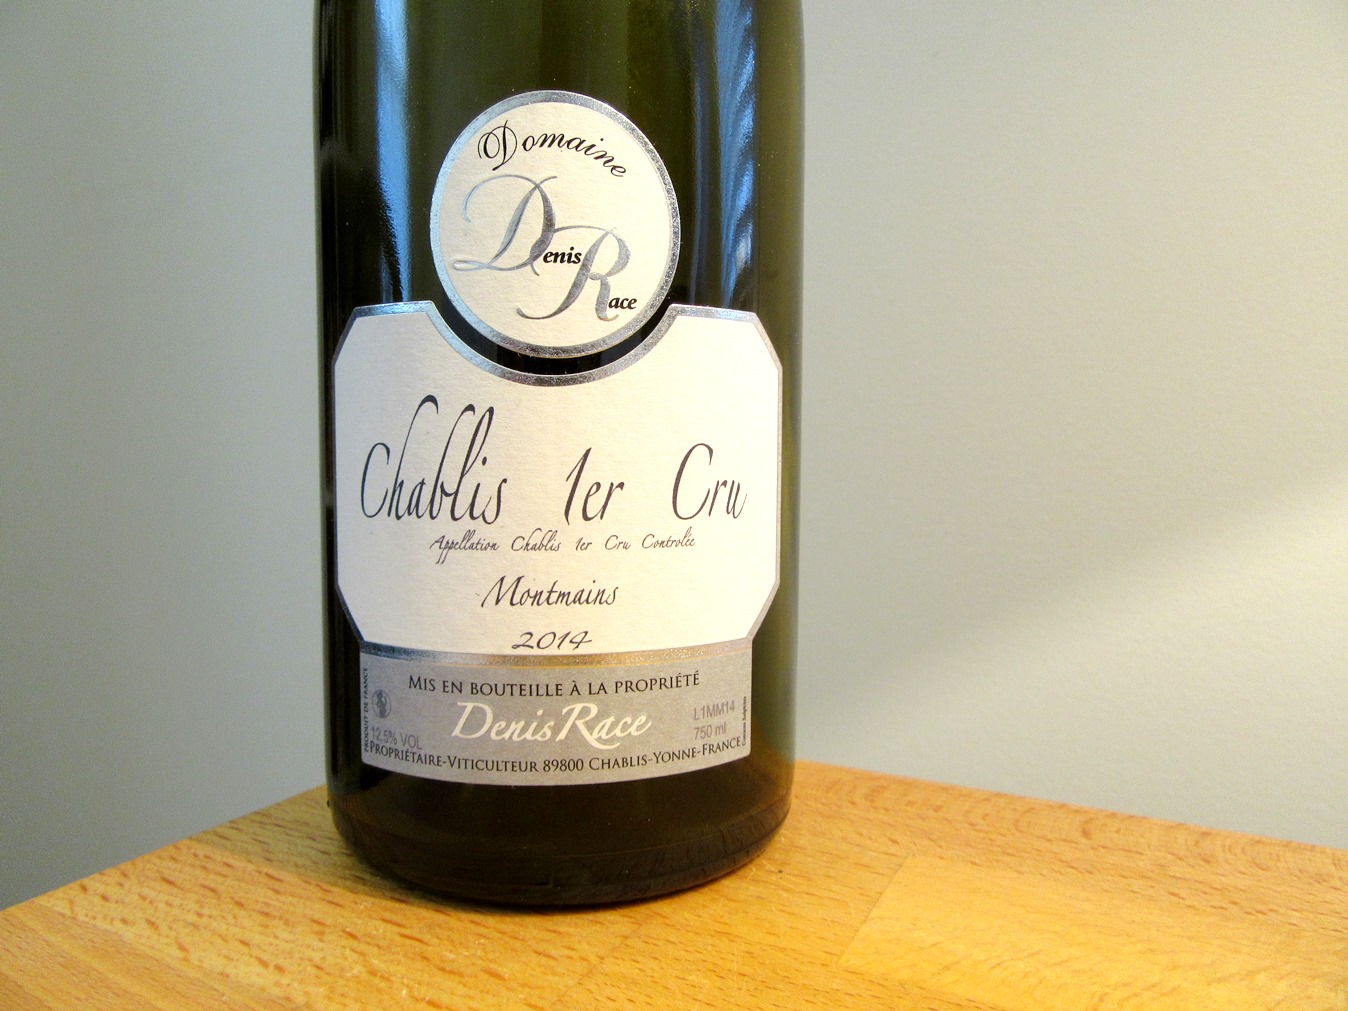 Domaine Denis Race, Chablis Premier Cru 2014 Montmains, France, Wine Casual